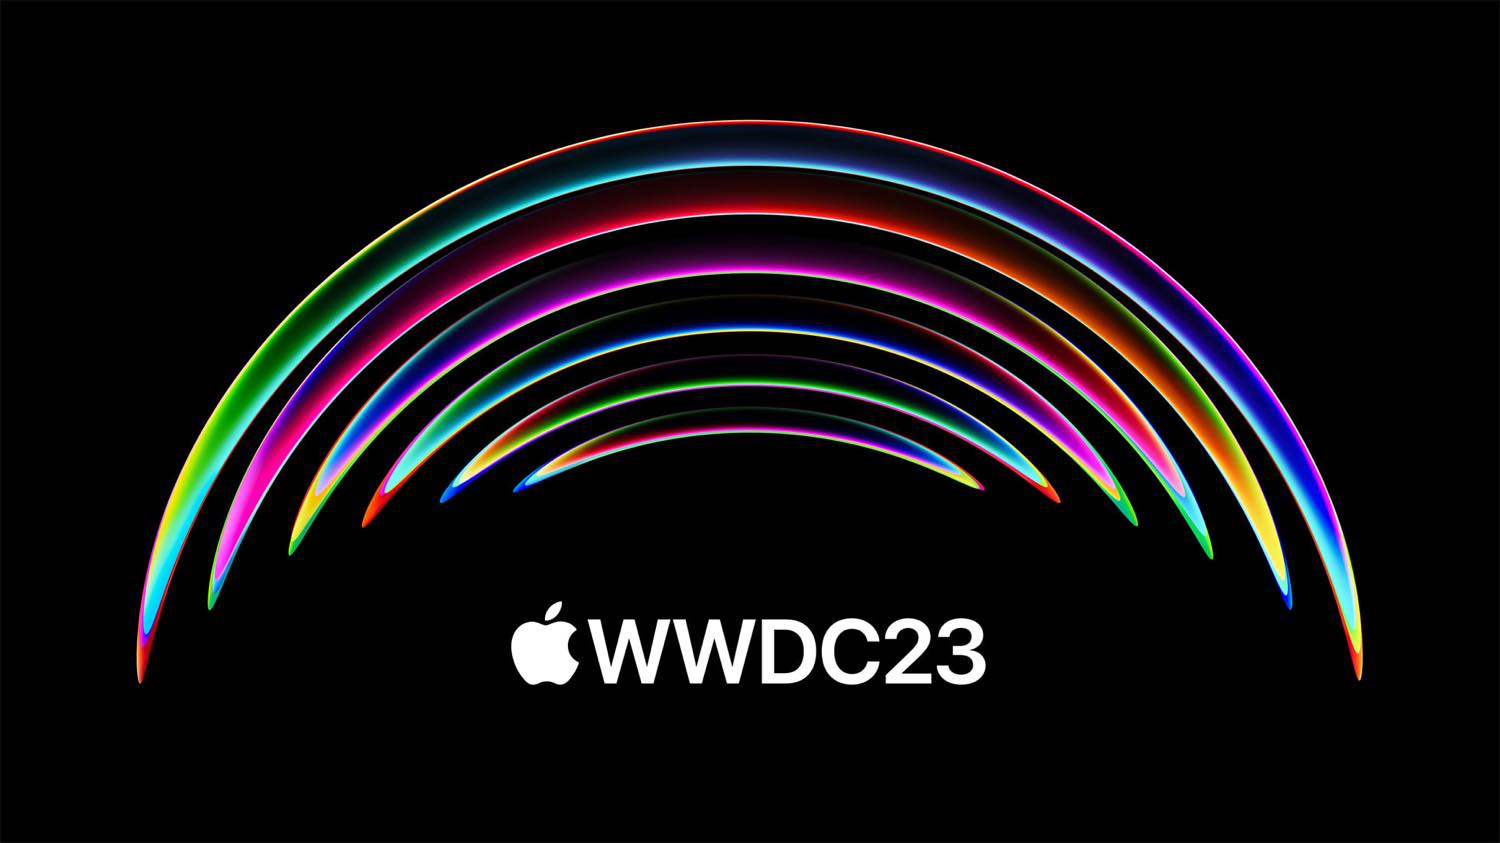 ｢WWDC23｣では複数の新型Mac、MRヘッドセット、各種最新OSが発表か − 基調講演は過去最長になる可能性も